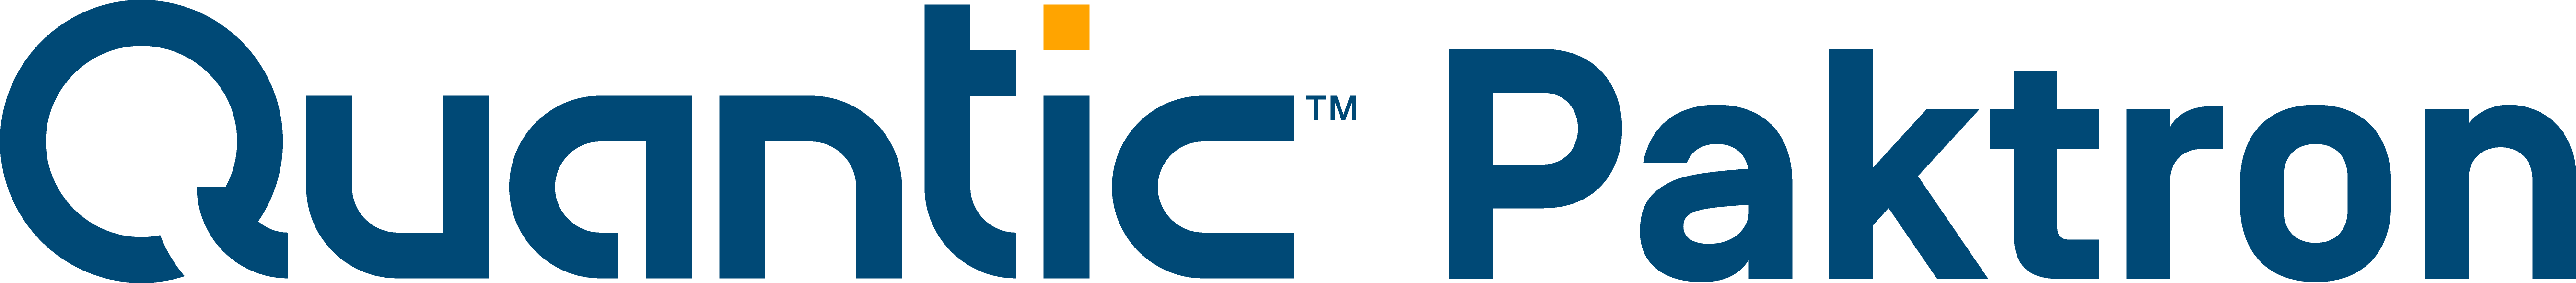 Quantic Paktron Manufacturer Logo